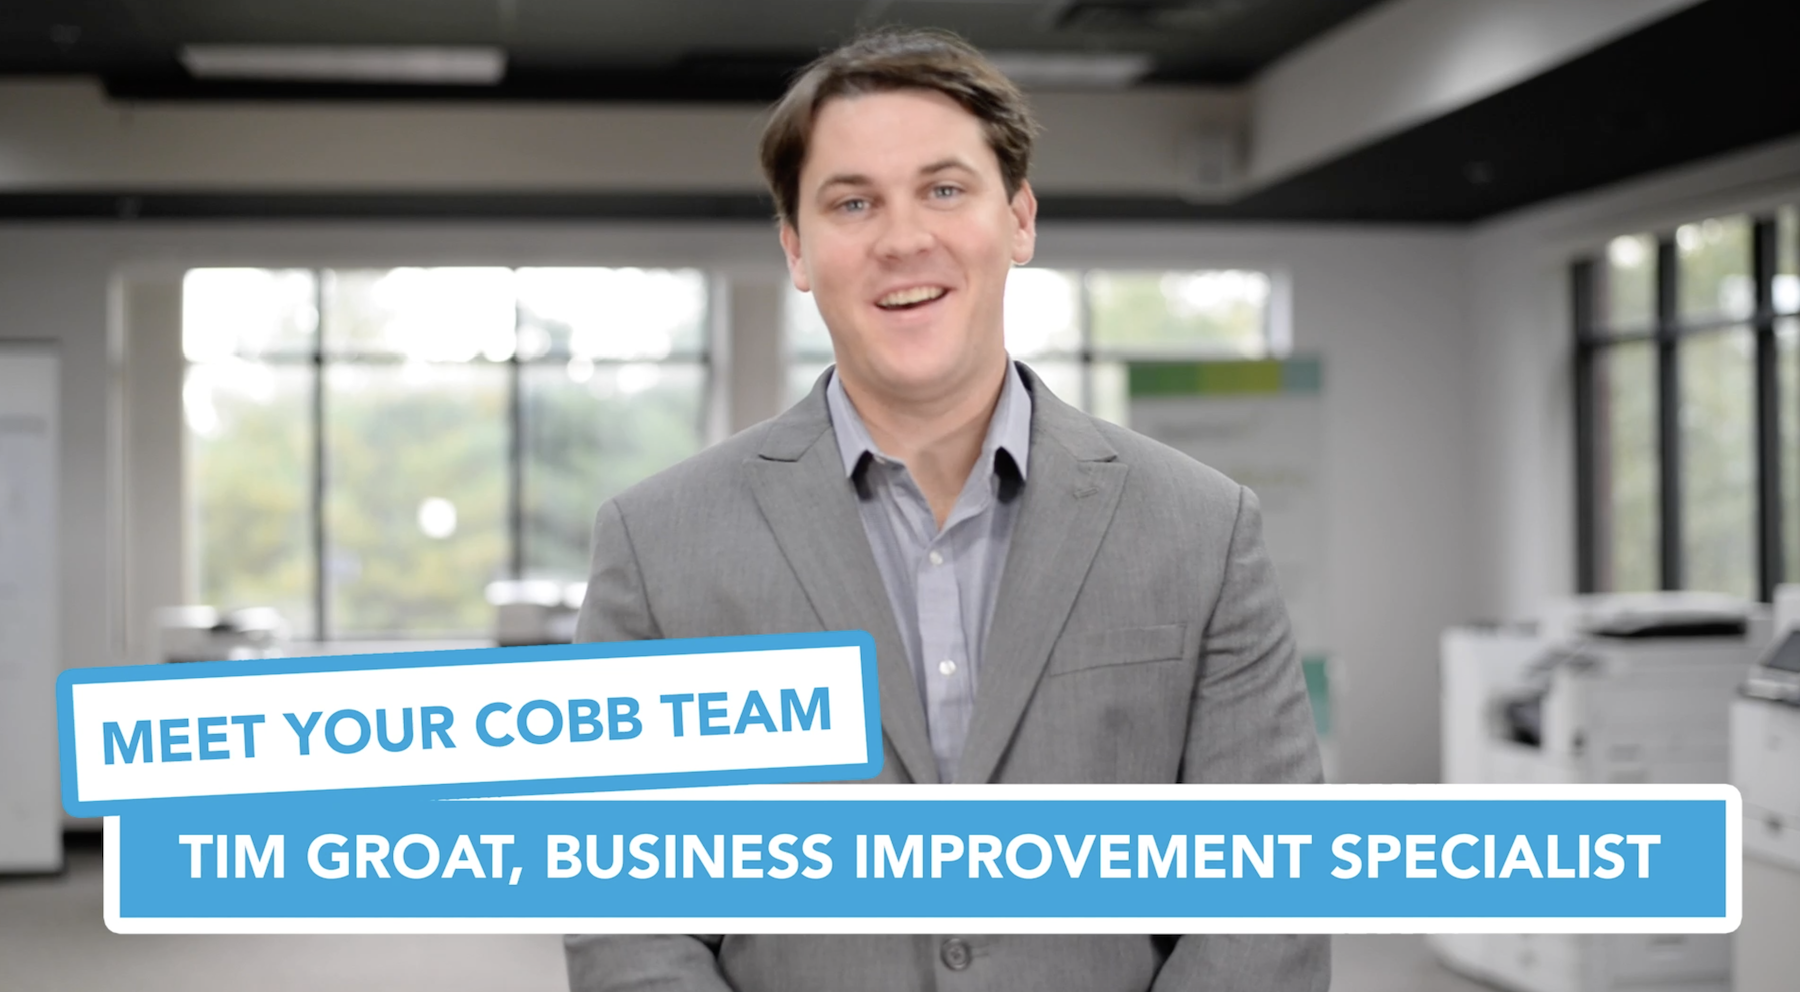 Meet Your Cobb Team: Tim Groat, Business Improvement Specialist